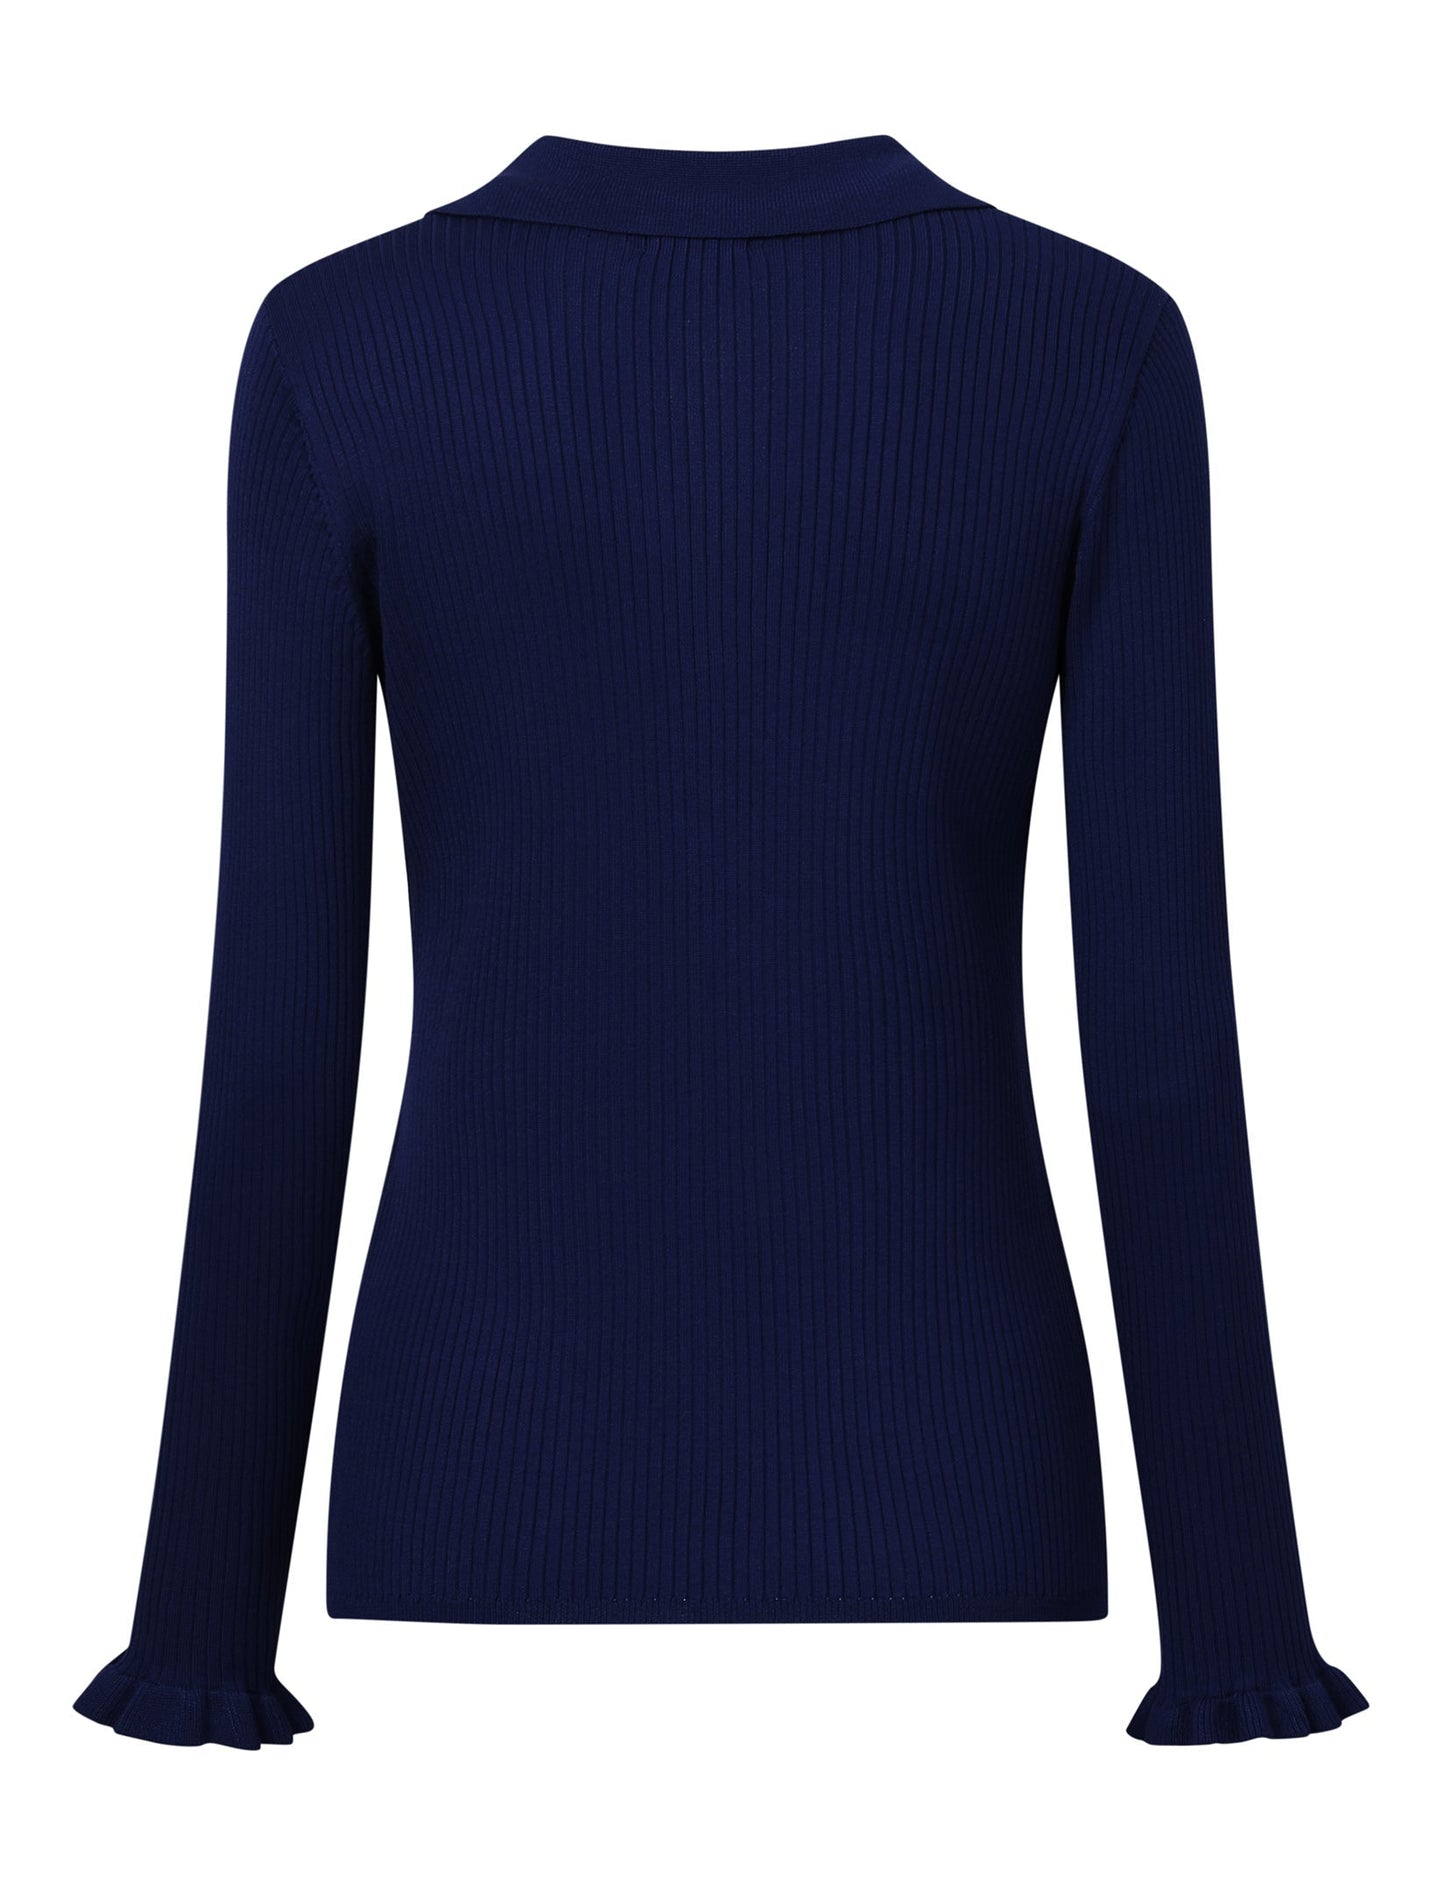 CLEARLOVE Women's Off Shoulder Top Long Sleeve T-Shirt Blue